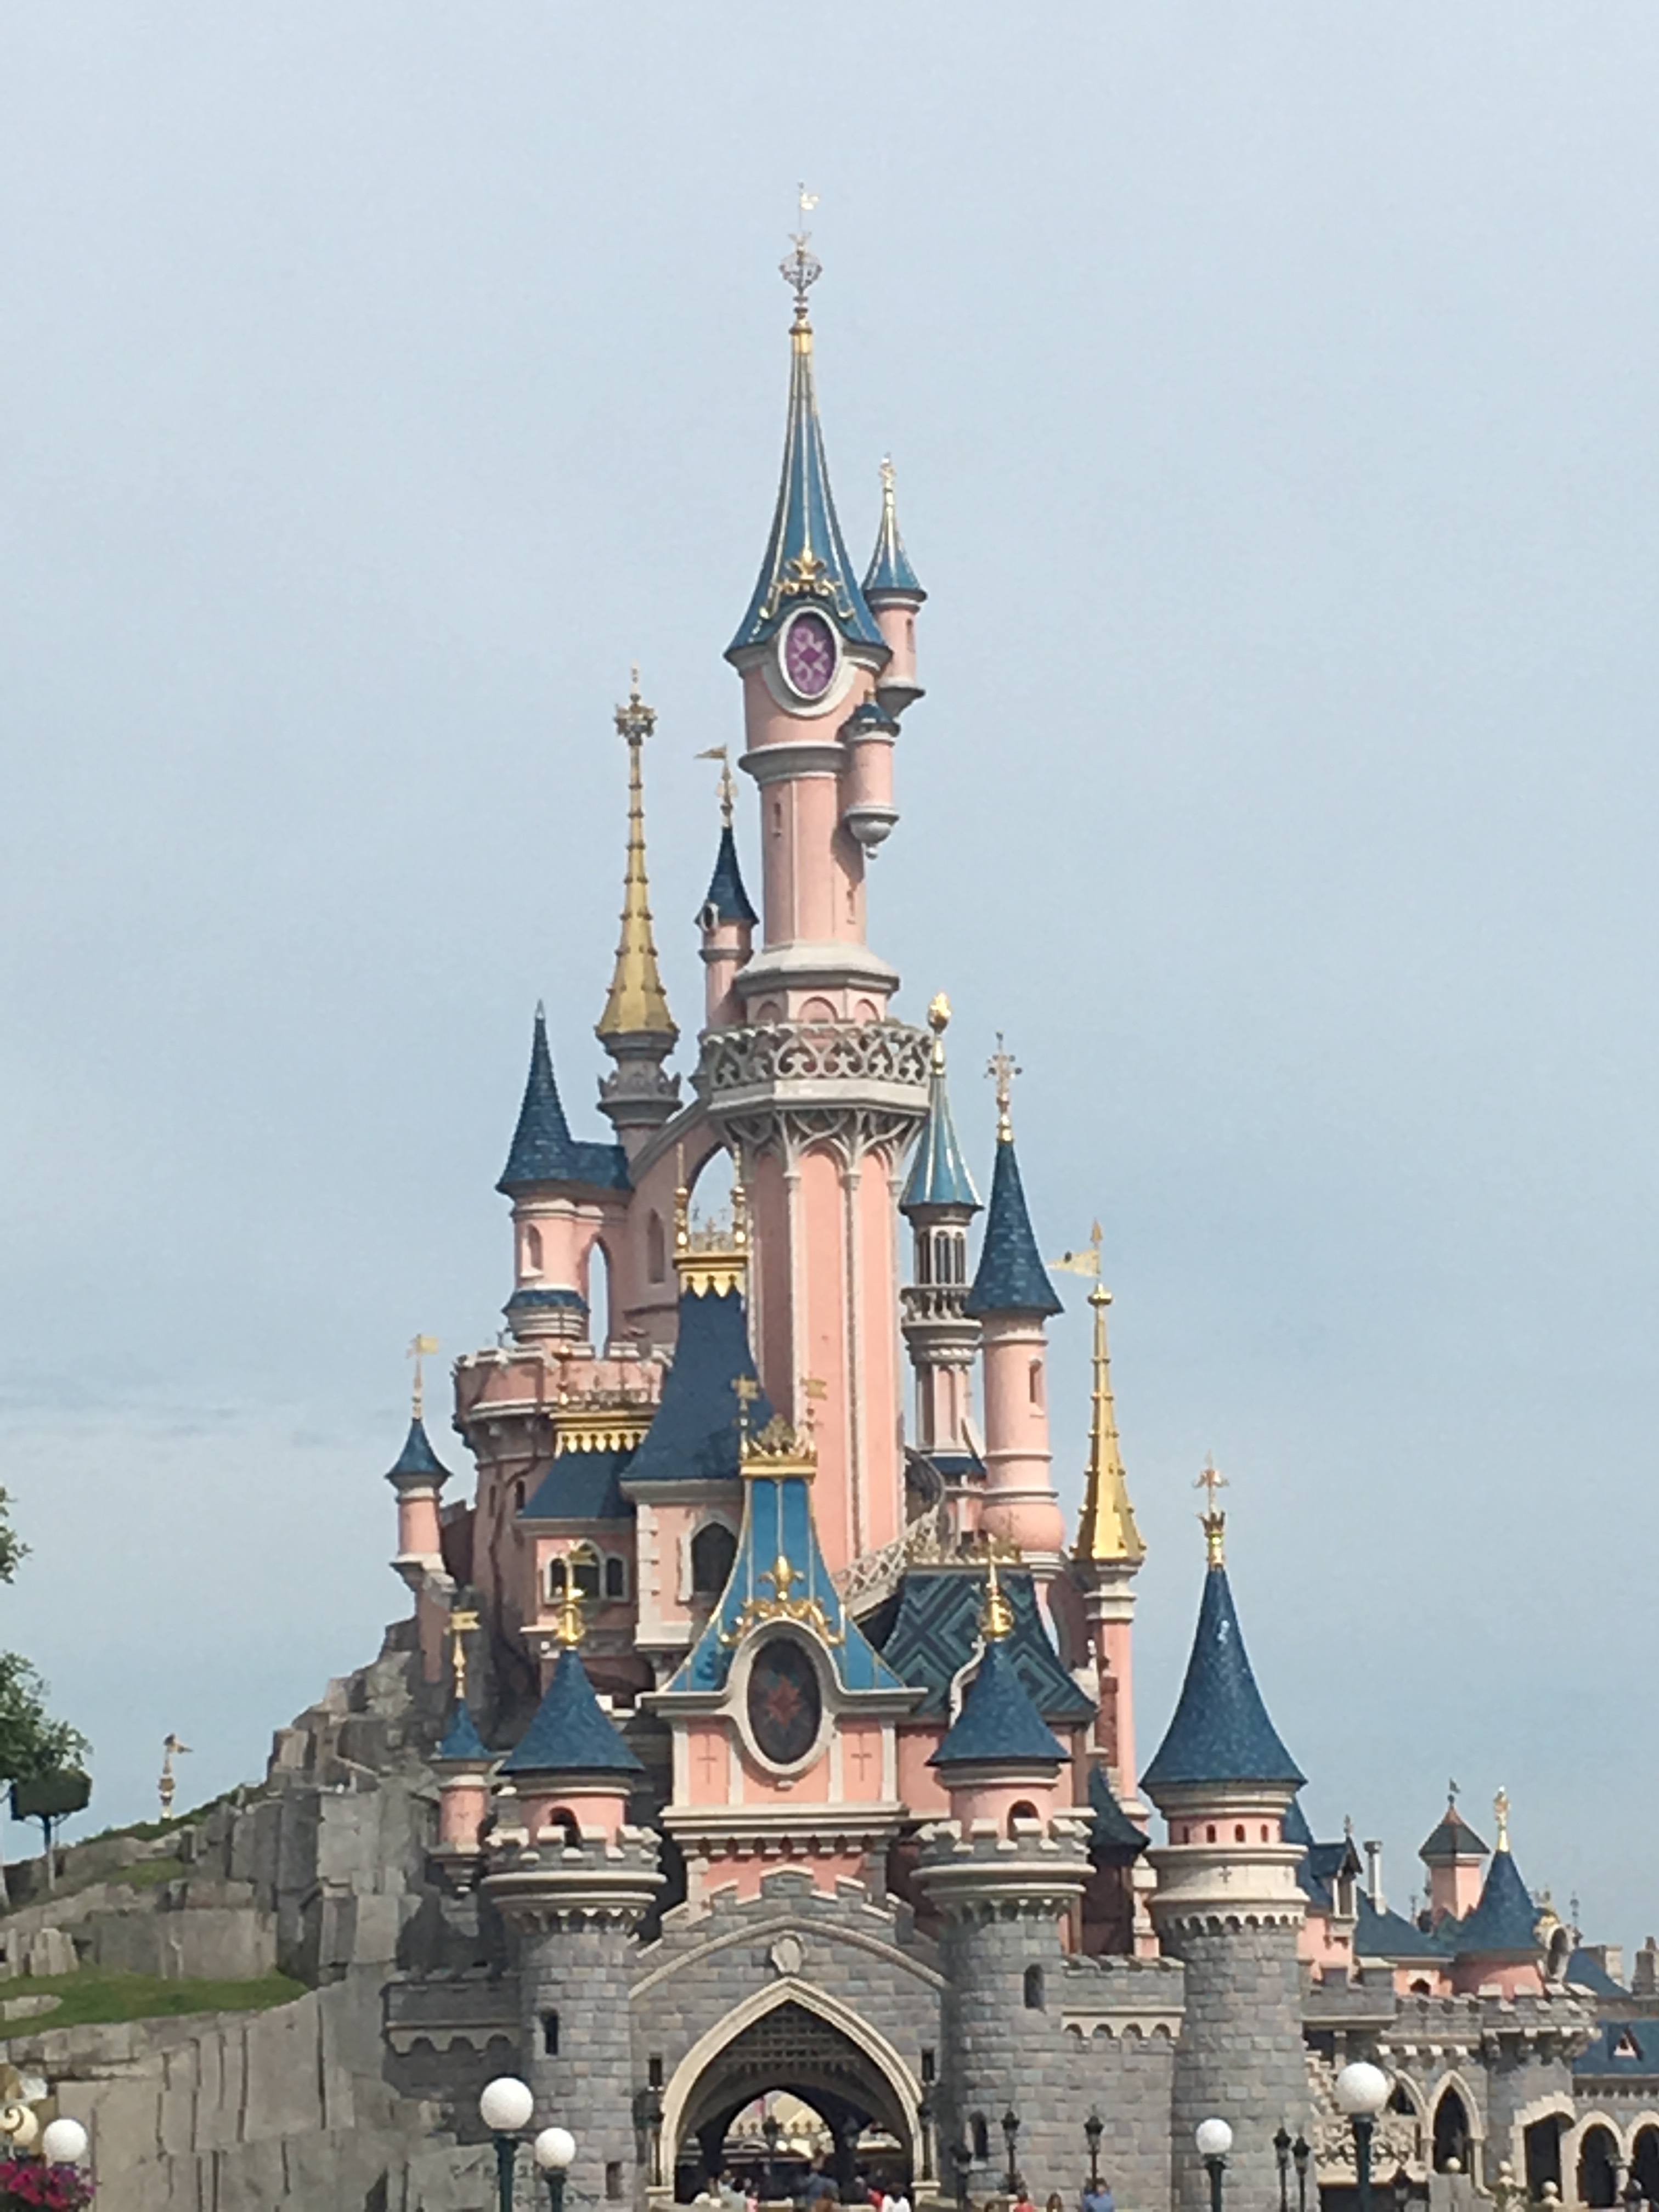 ﻿În vizită pe tărâmul magiei: Disneyland Paris